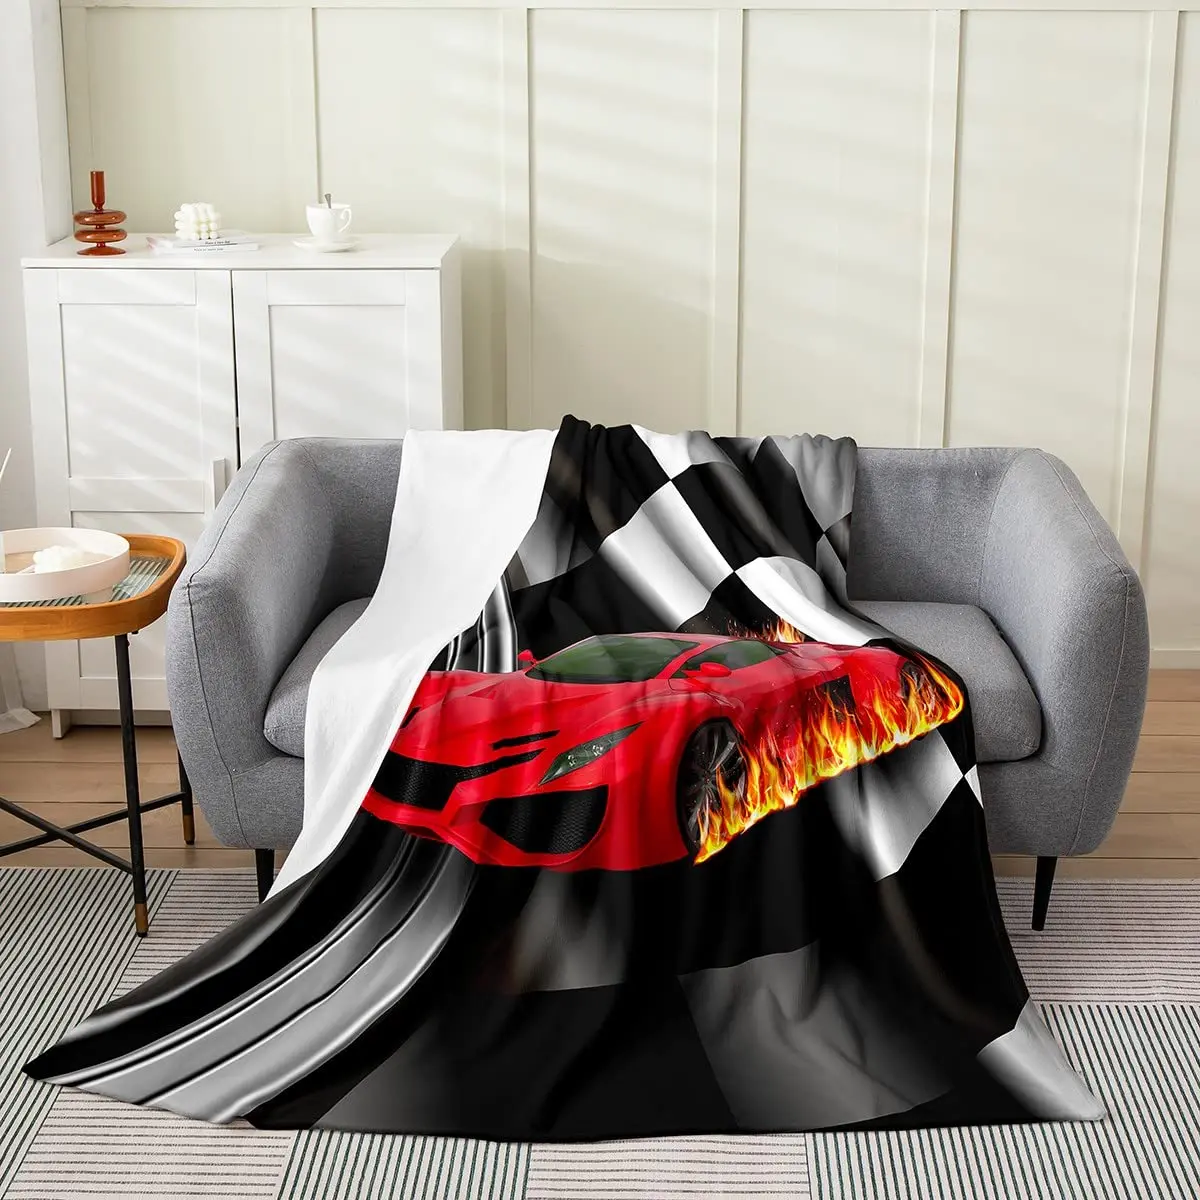 Покрывало на тему автомобилей, гоночный автомобиль, супер мягкий и легкий для кровати, диван, одеяло King Queen в натуральную величину для подарка автолюбителю Изображение 3